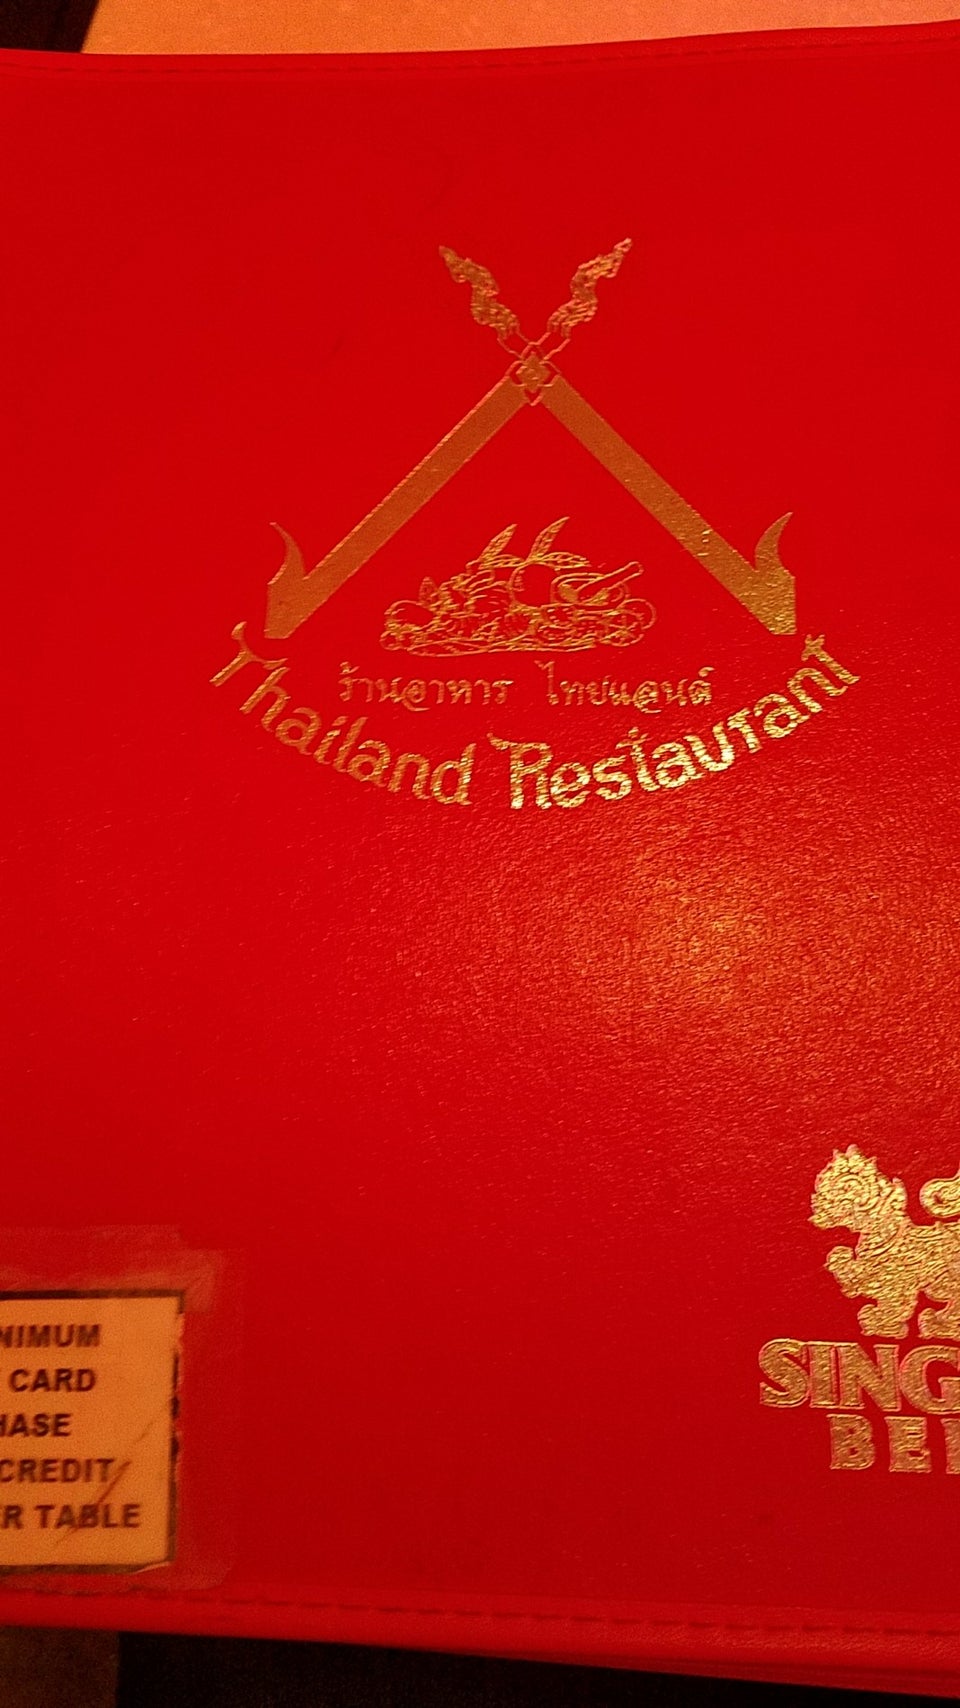 Photo of Thailand Restaurant